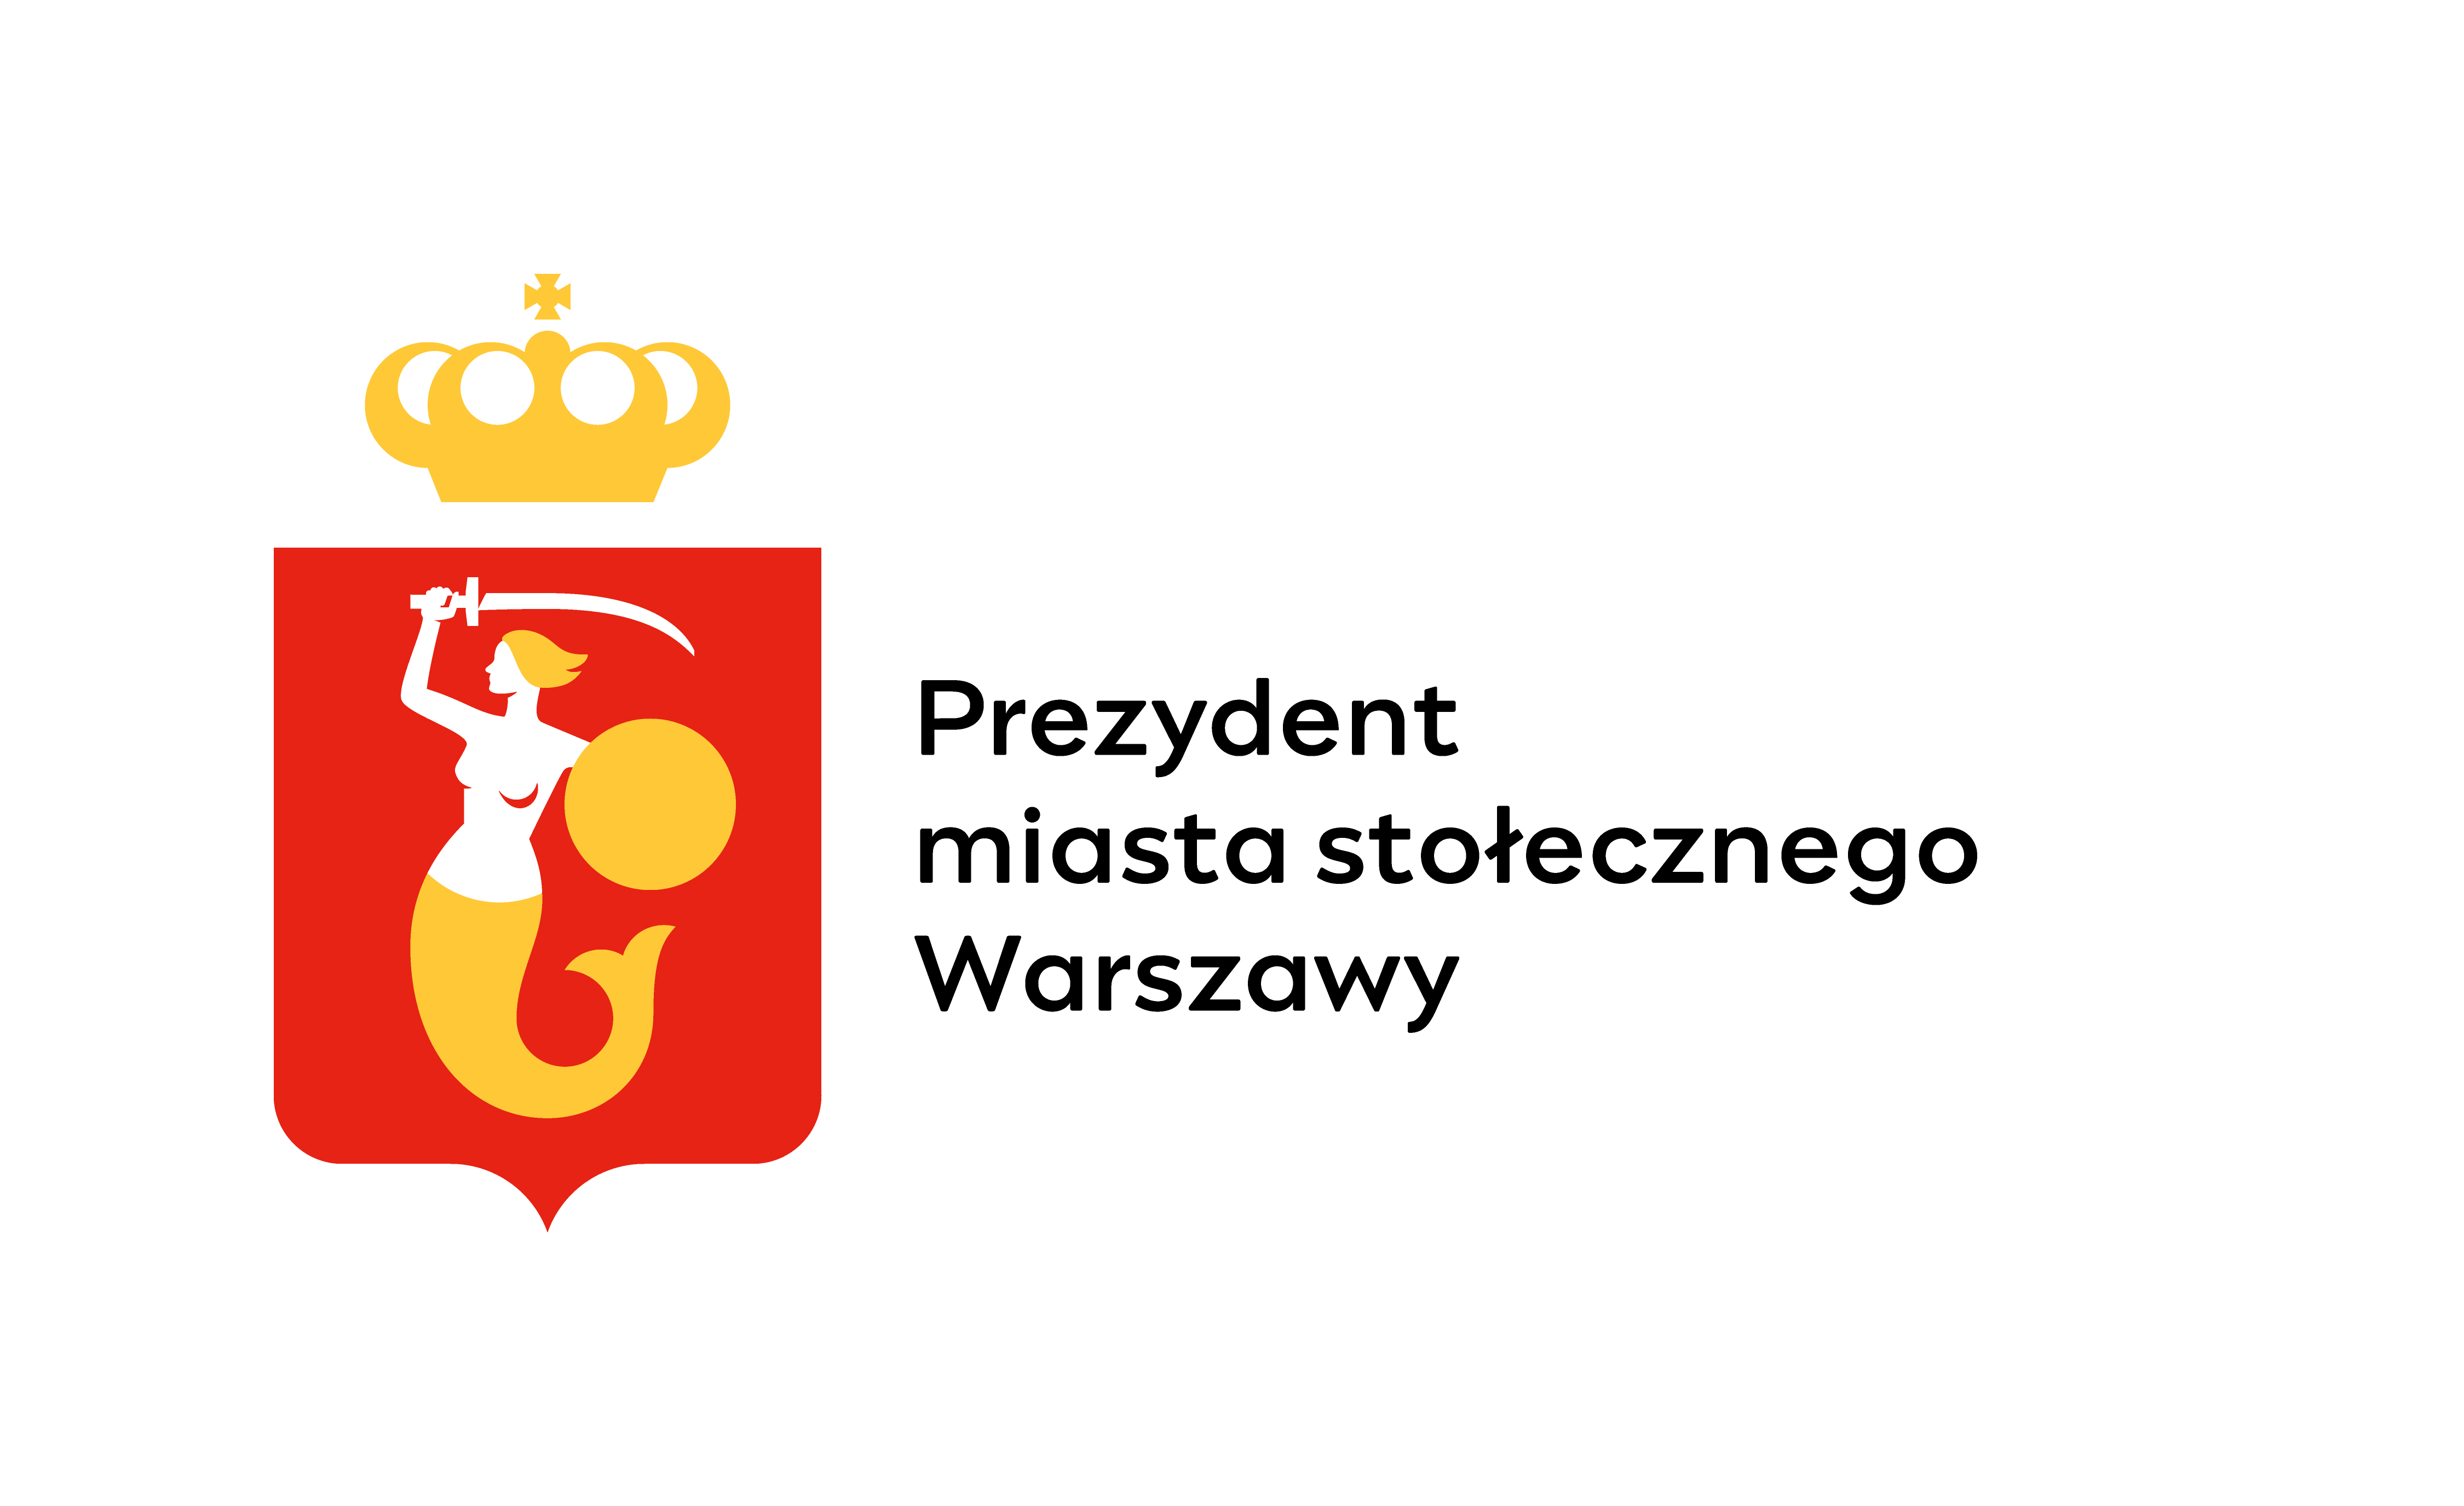 Prezydent miasta stołecznego Warszawy